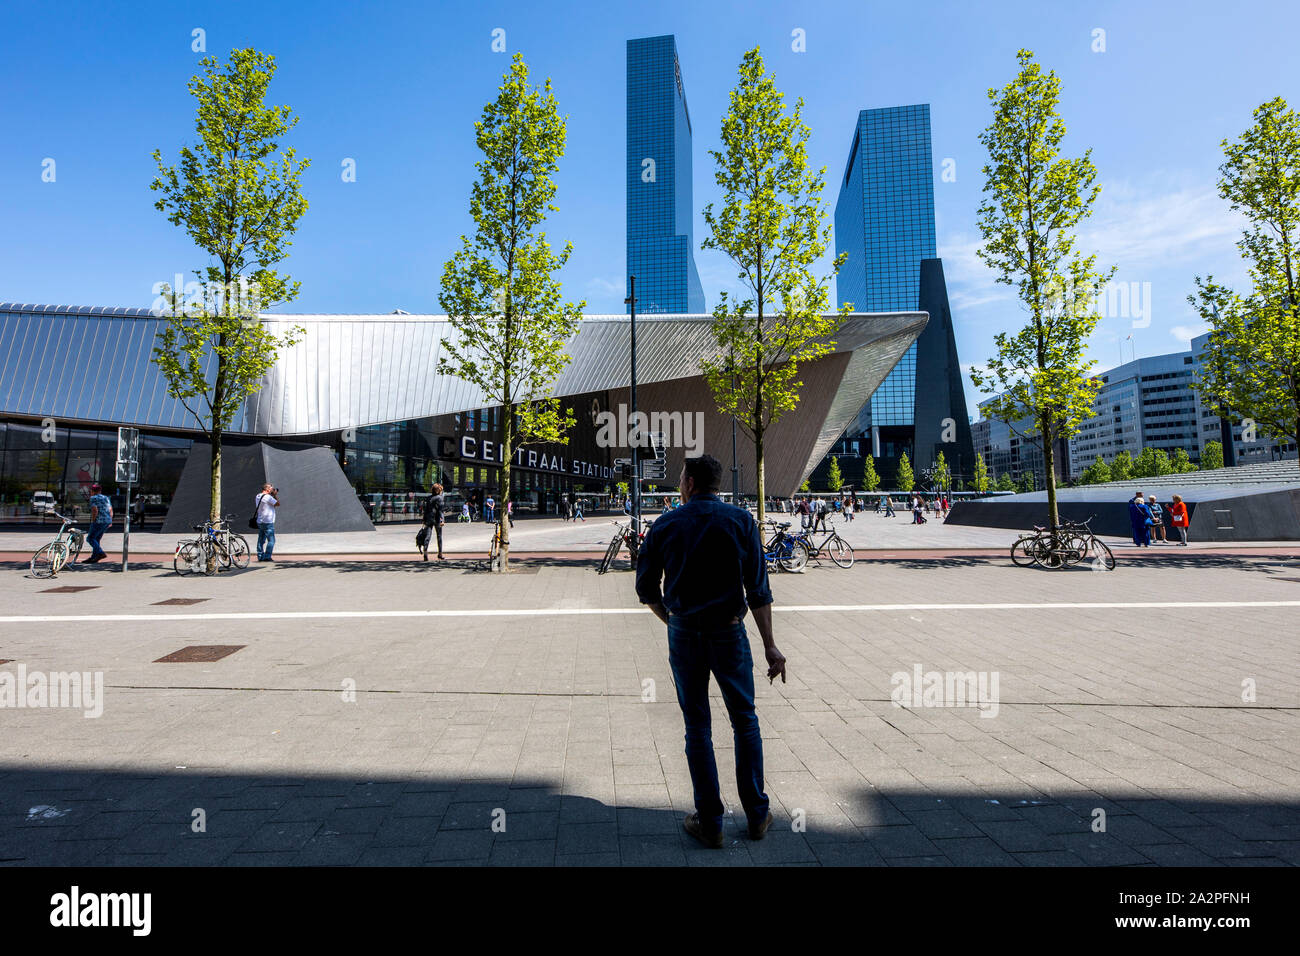 La gare centrale de Rotterdam Centraal, Gare, Hall, Pays-Bas Delftse, immeuble de bureaux, Port Banque D'Images